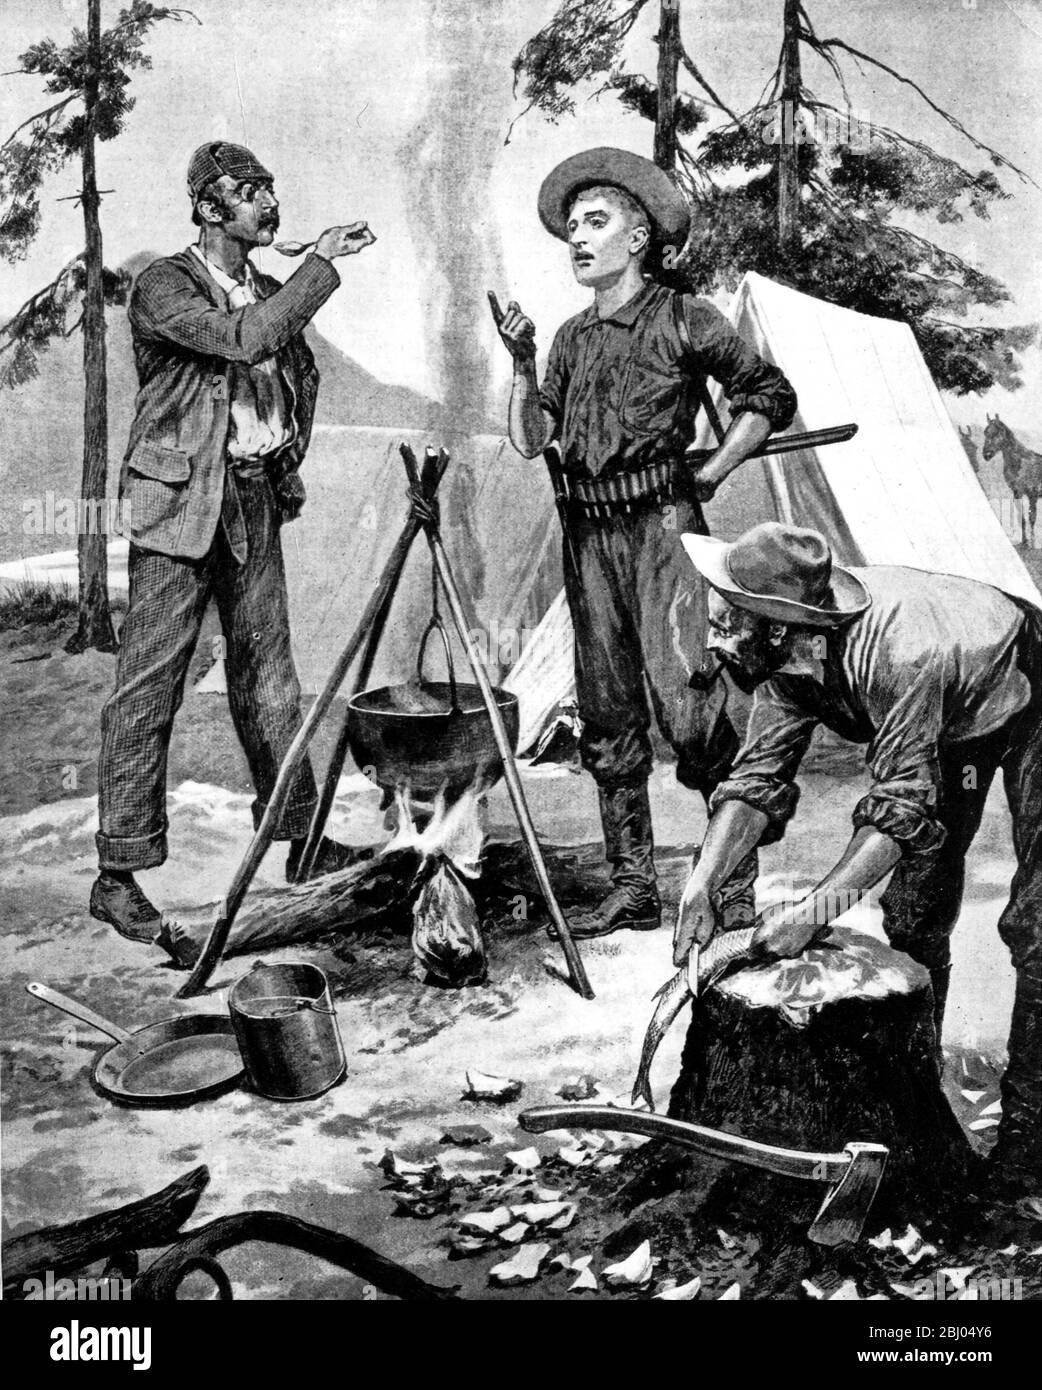 Un touriste dans le Wild West 1891. - - exploration Amérique du Nord un touriste dans le Wild West 1891 Banque D'Images